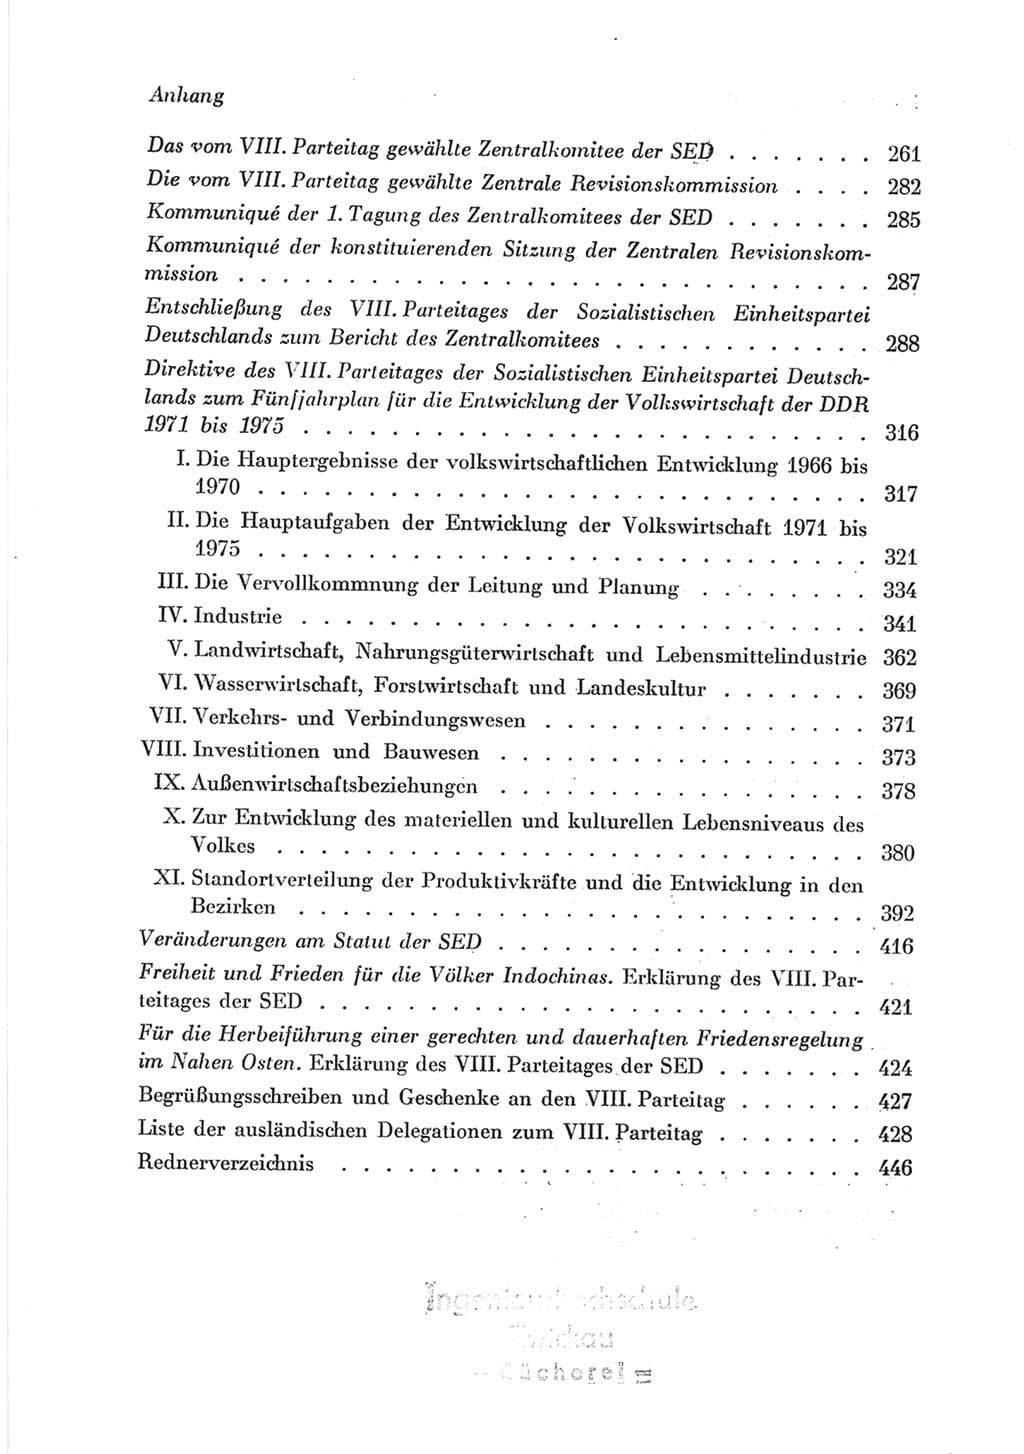 Protokoll der Verhandlungen des Ⅷ. Parteitages der Sozialistischen Einheitspartei Deutschlands (SED) [Deutsche Demokratische Republik (DDR)] 1971, Band 2, Seite 456 (Prot. Verh. Ⅷ. PT SED DDR 1971, Bd. 2, S. 456)